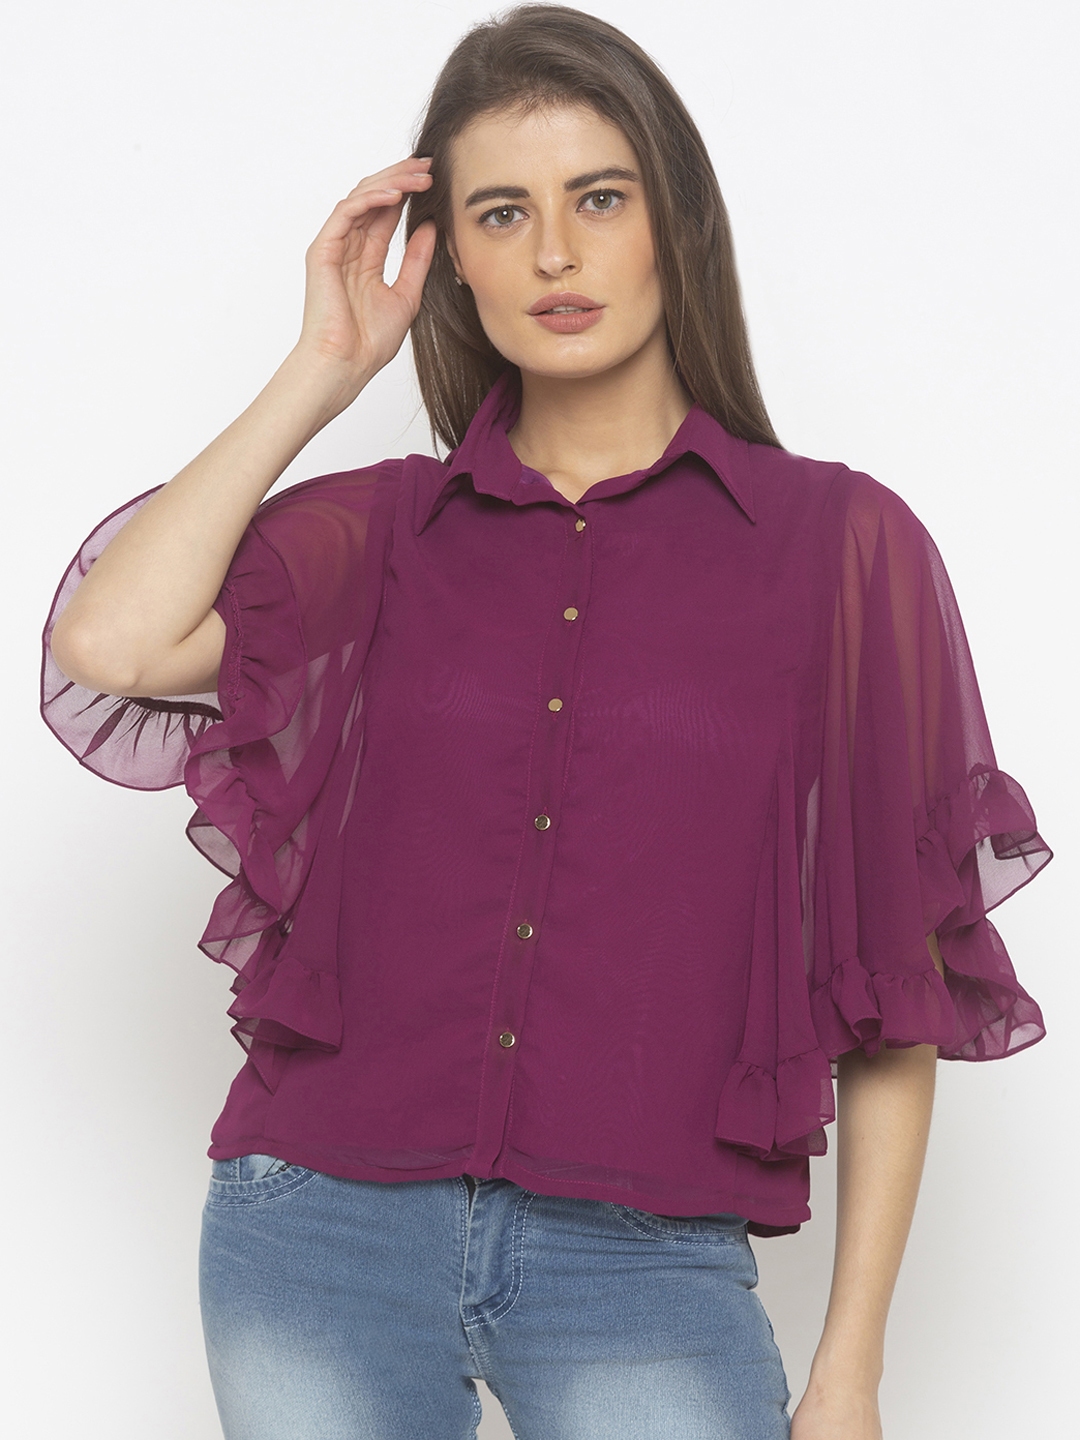 Buy Iti Women Purple Solid Top - Tops for Women 11315526 | Myntra